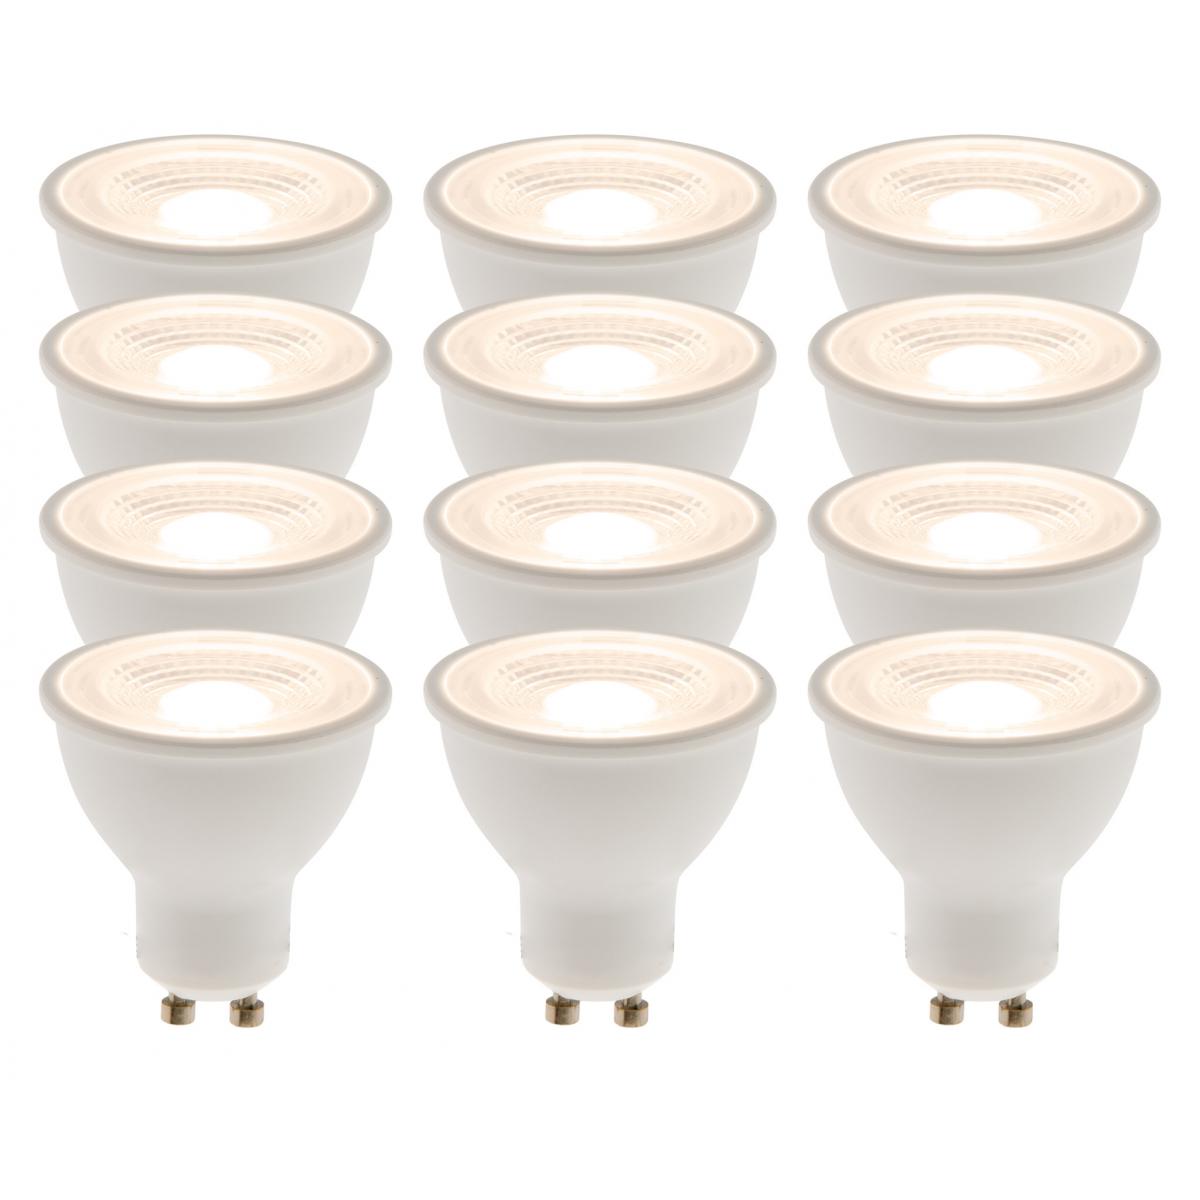 Elexity - Lot de 12 spots LED 5W GU10 Réflecteur - Ampoules LED